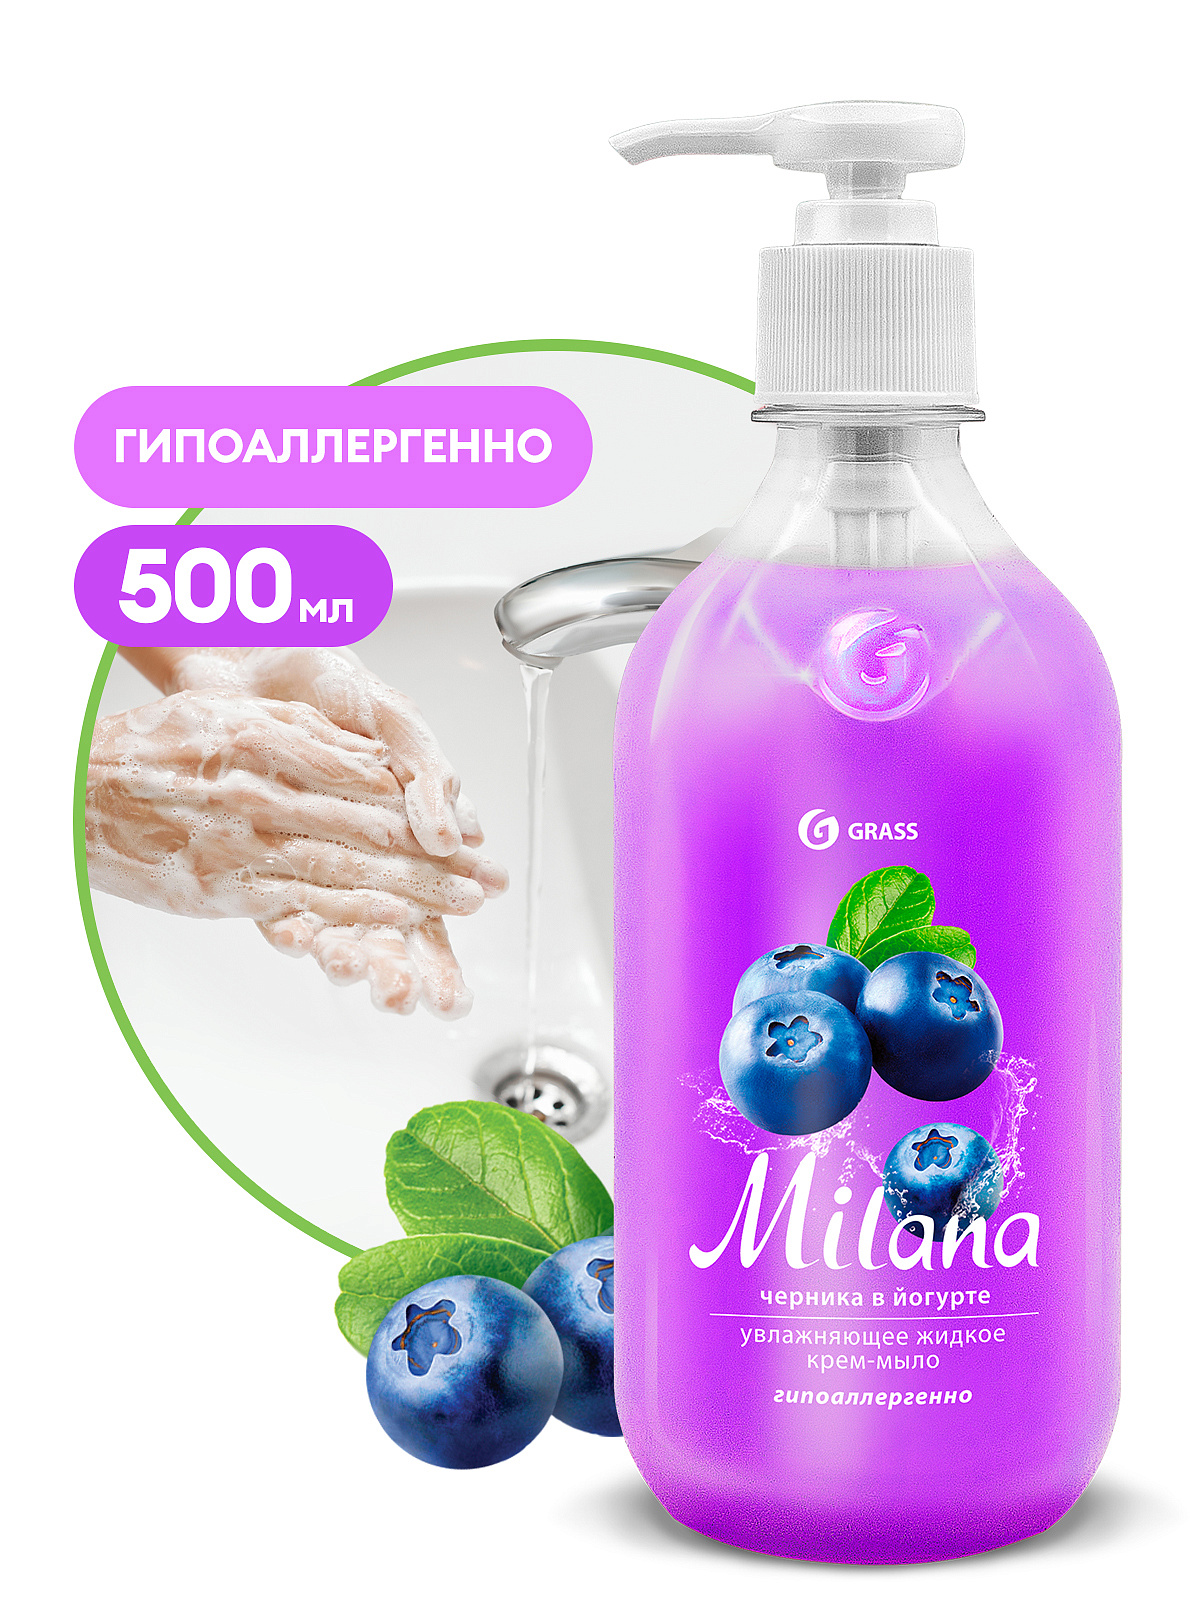 Жидкое крем-мыло Milana черника в йогурте 500 мл GraSS